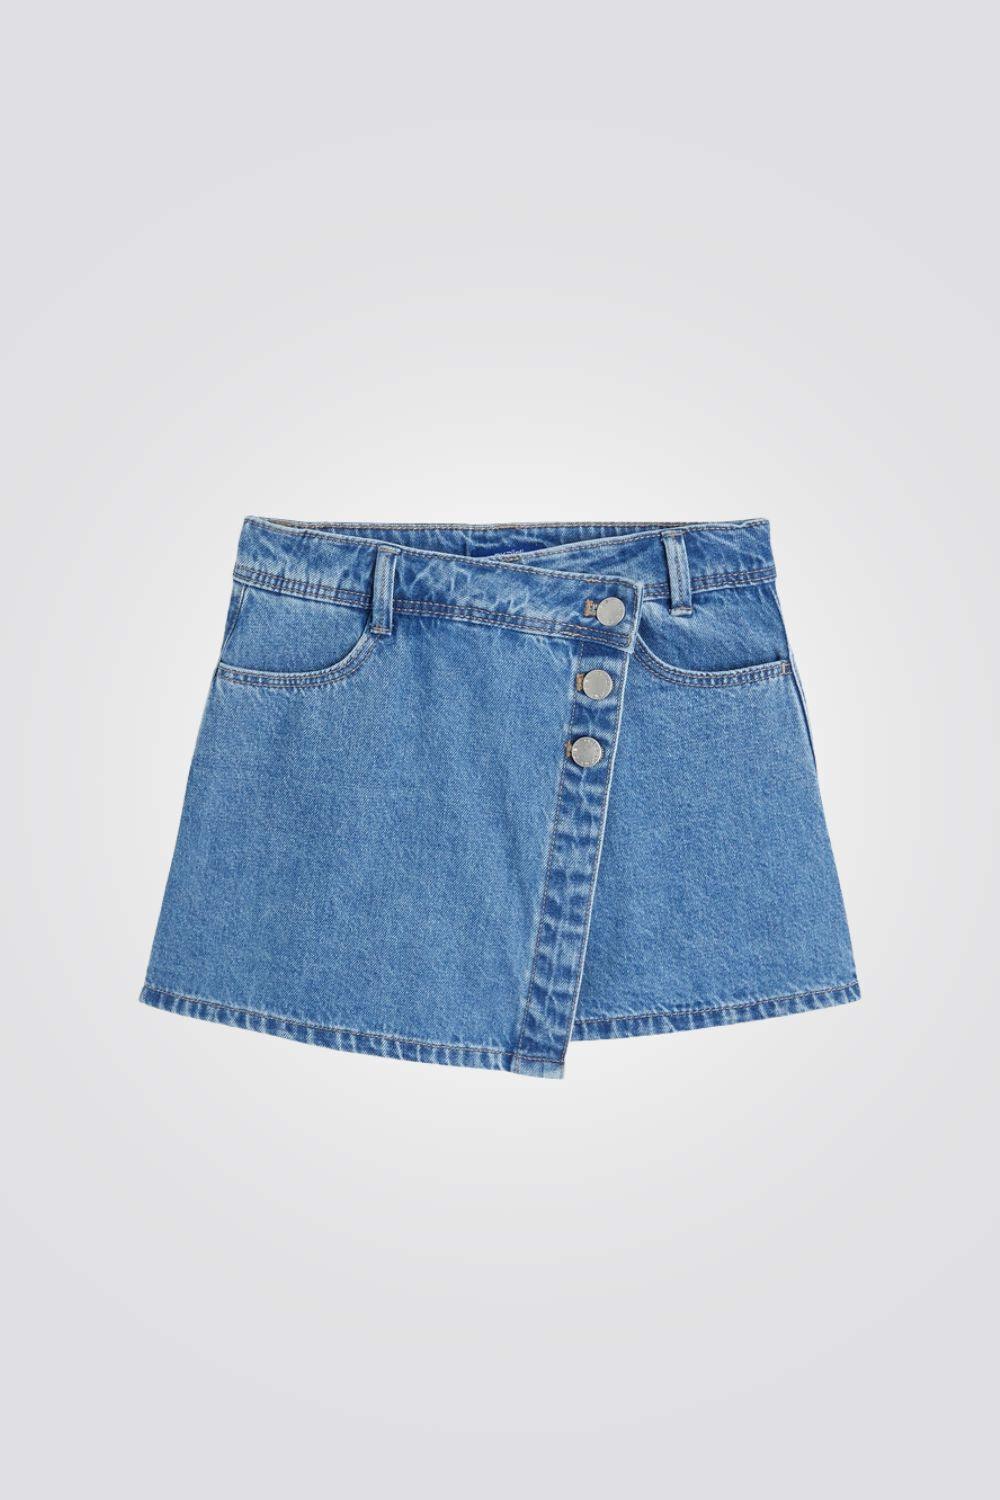 מכנסי חצאית לילדות בצבע ג'ינס - MASHBIR//365